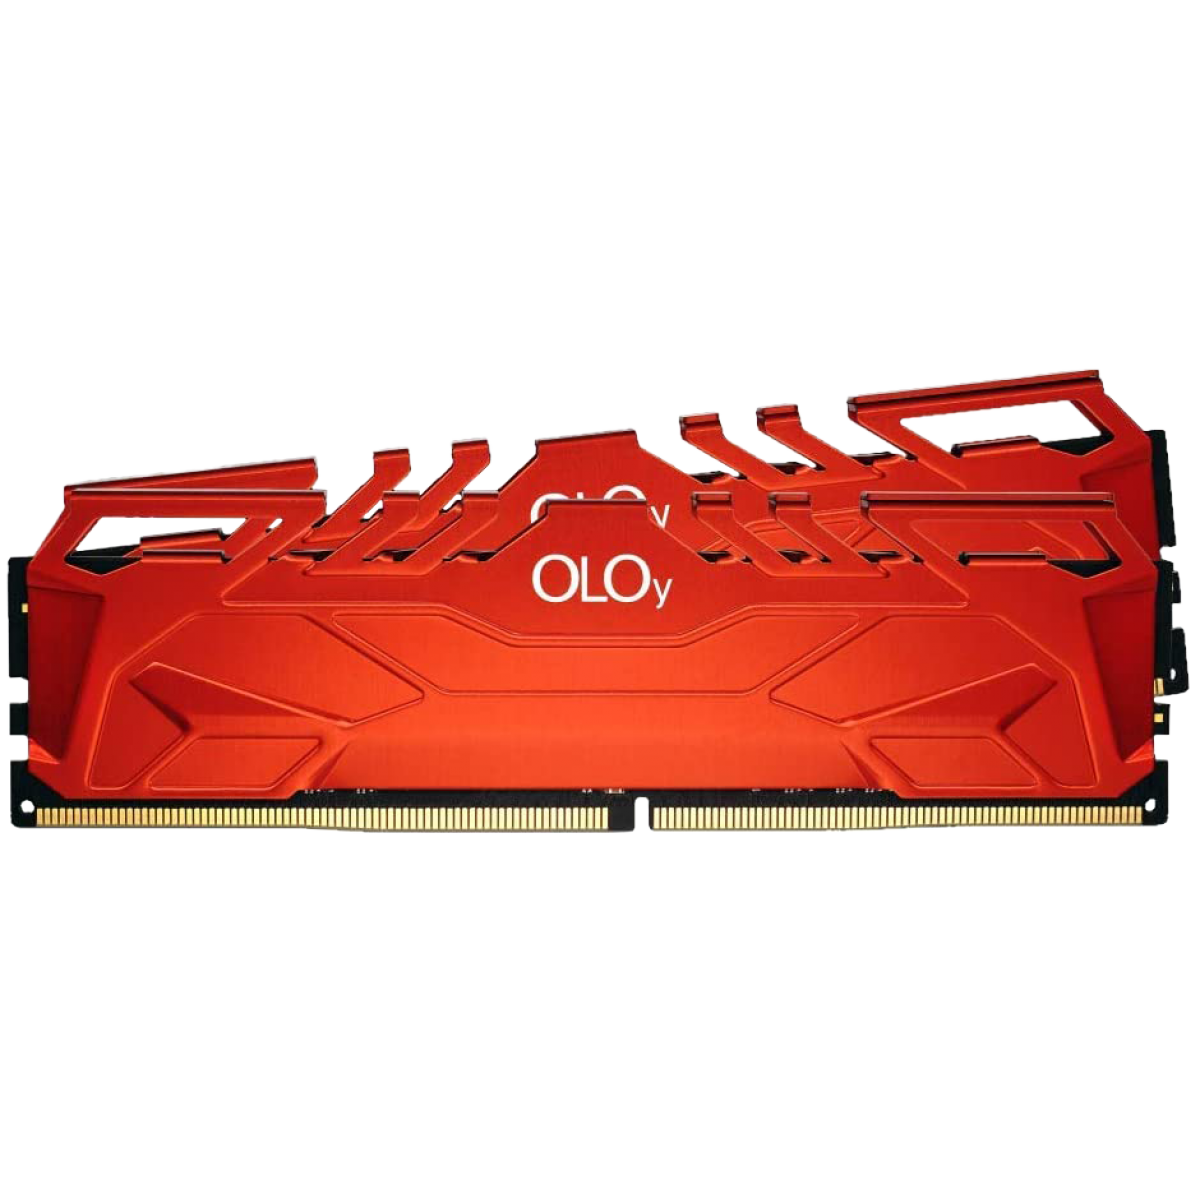 Memória DDR4 OLOy Owl, 16GB, 3000MHz, Red, MD4U163016CHSA